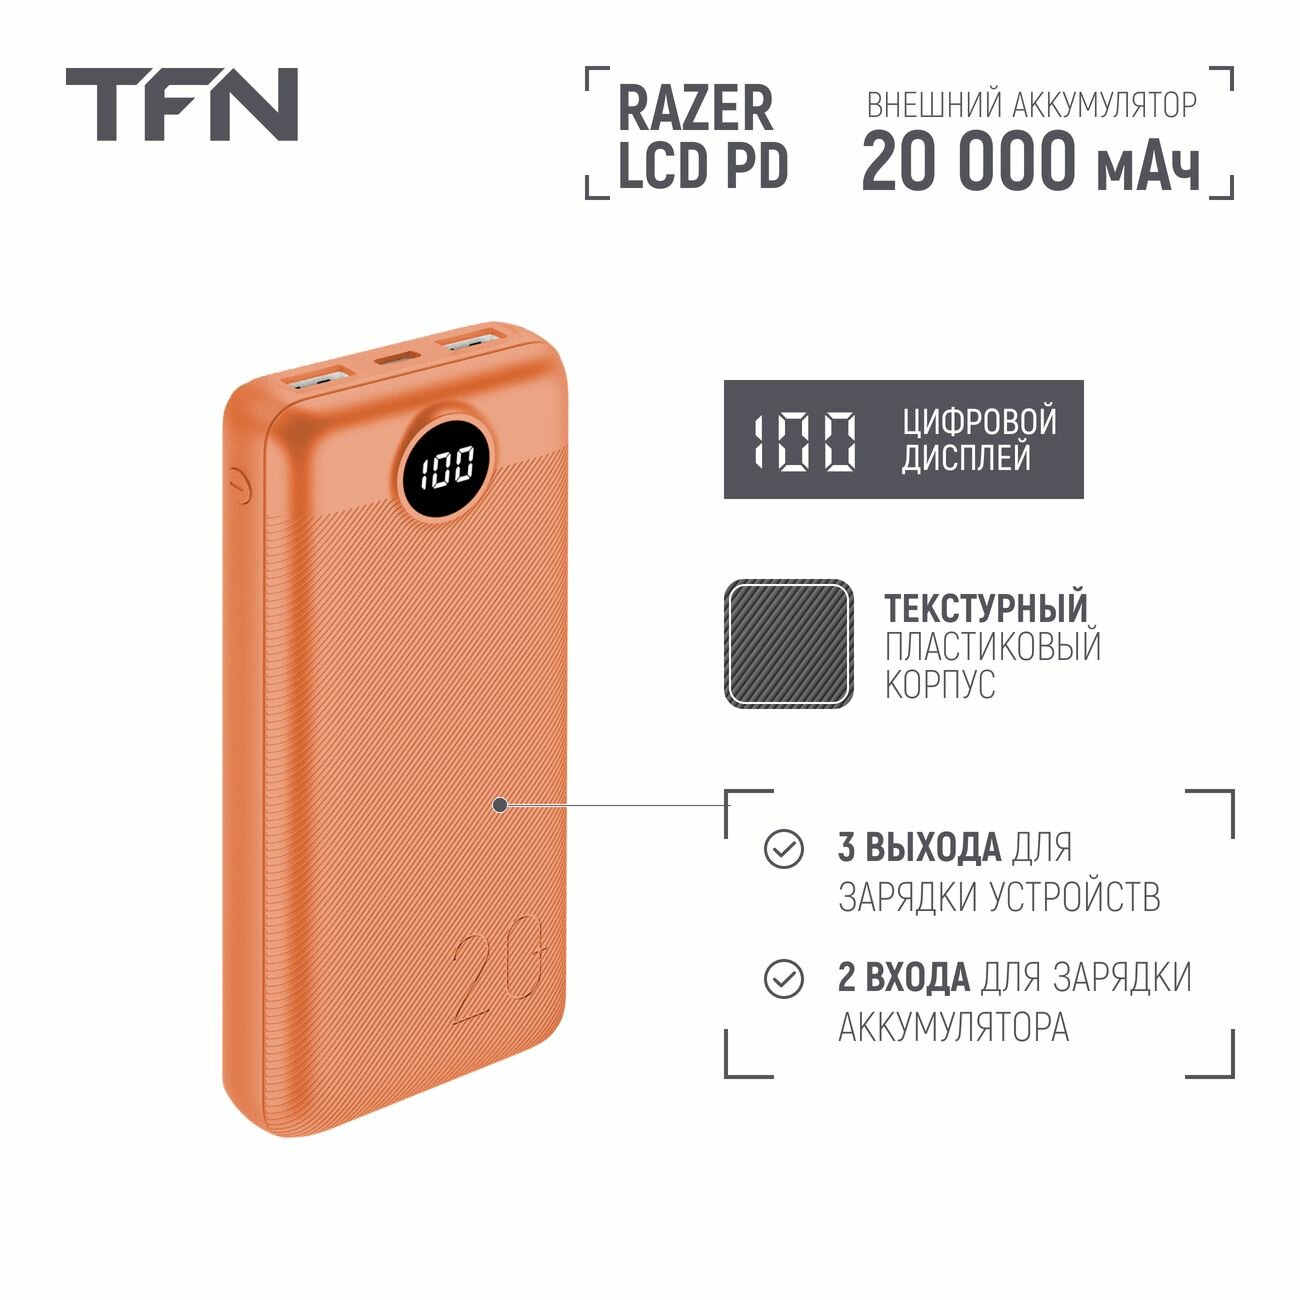 Внешний аккумулятор TFN Razer LCD PD 20000 мАч светло-оранжевый